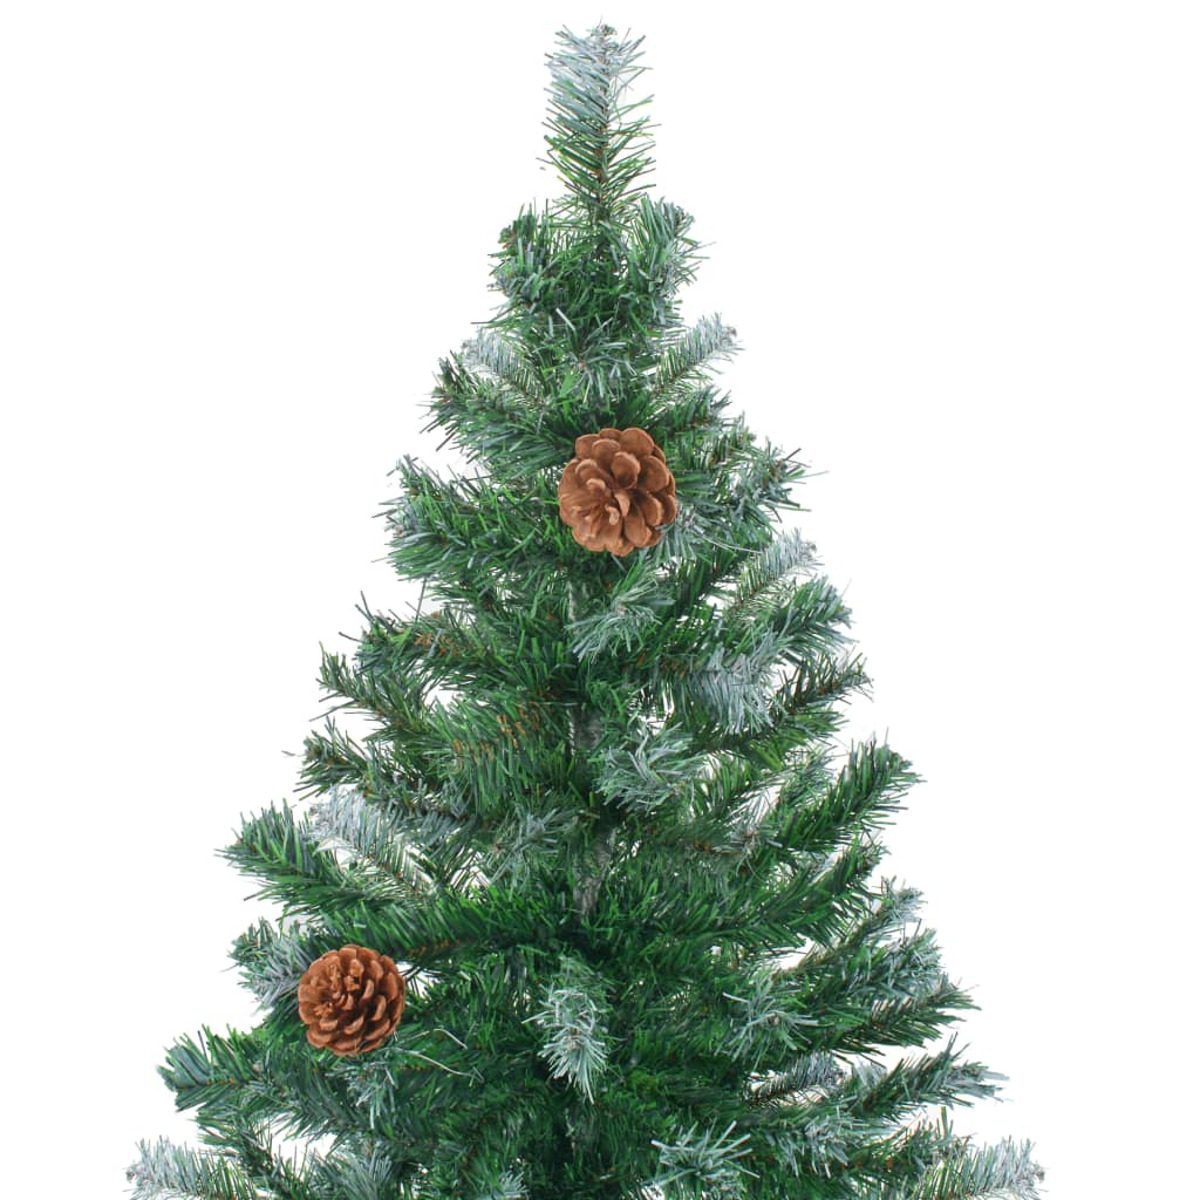 Weihnachtsbaum VIDAXL 3077701